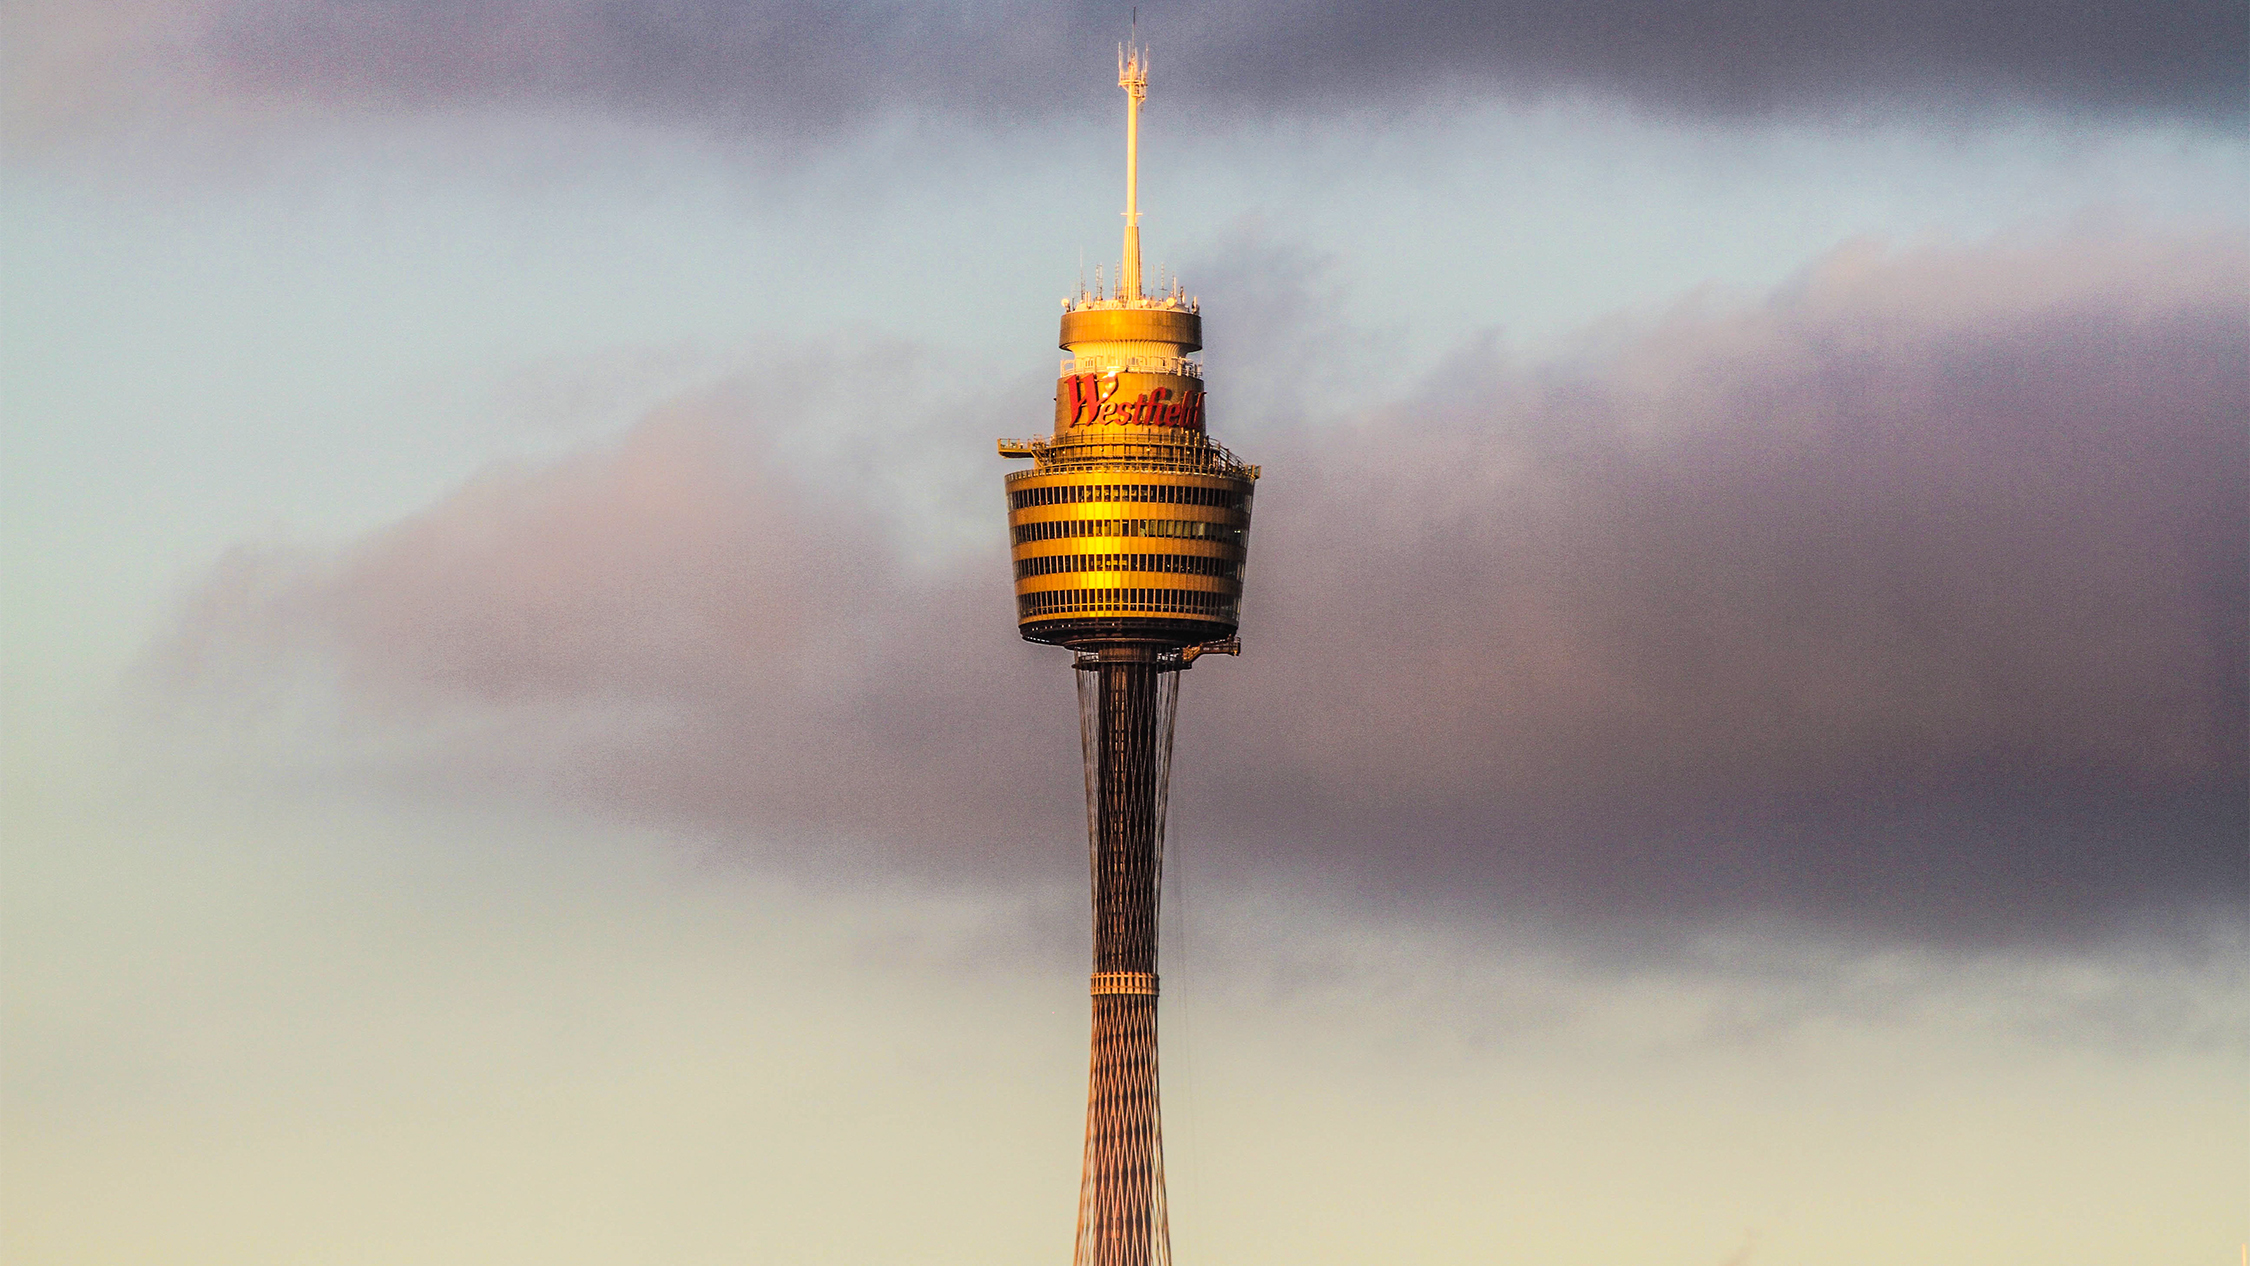 Sydney Tower Eye | Museums in Sydney, Sydney